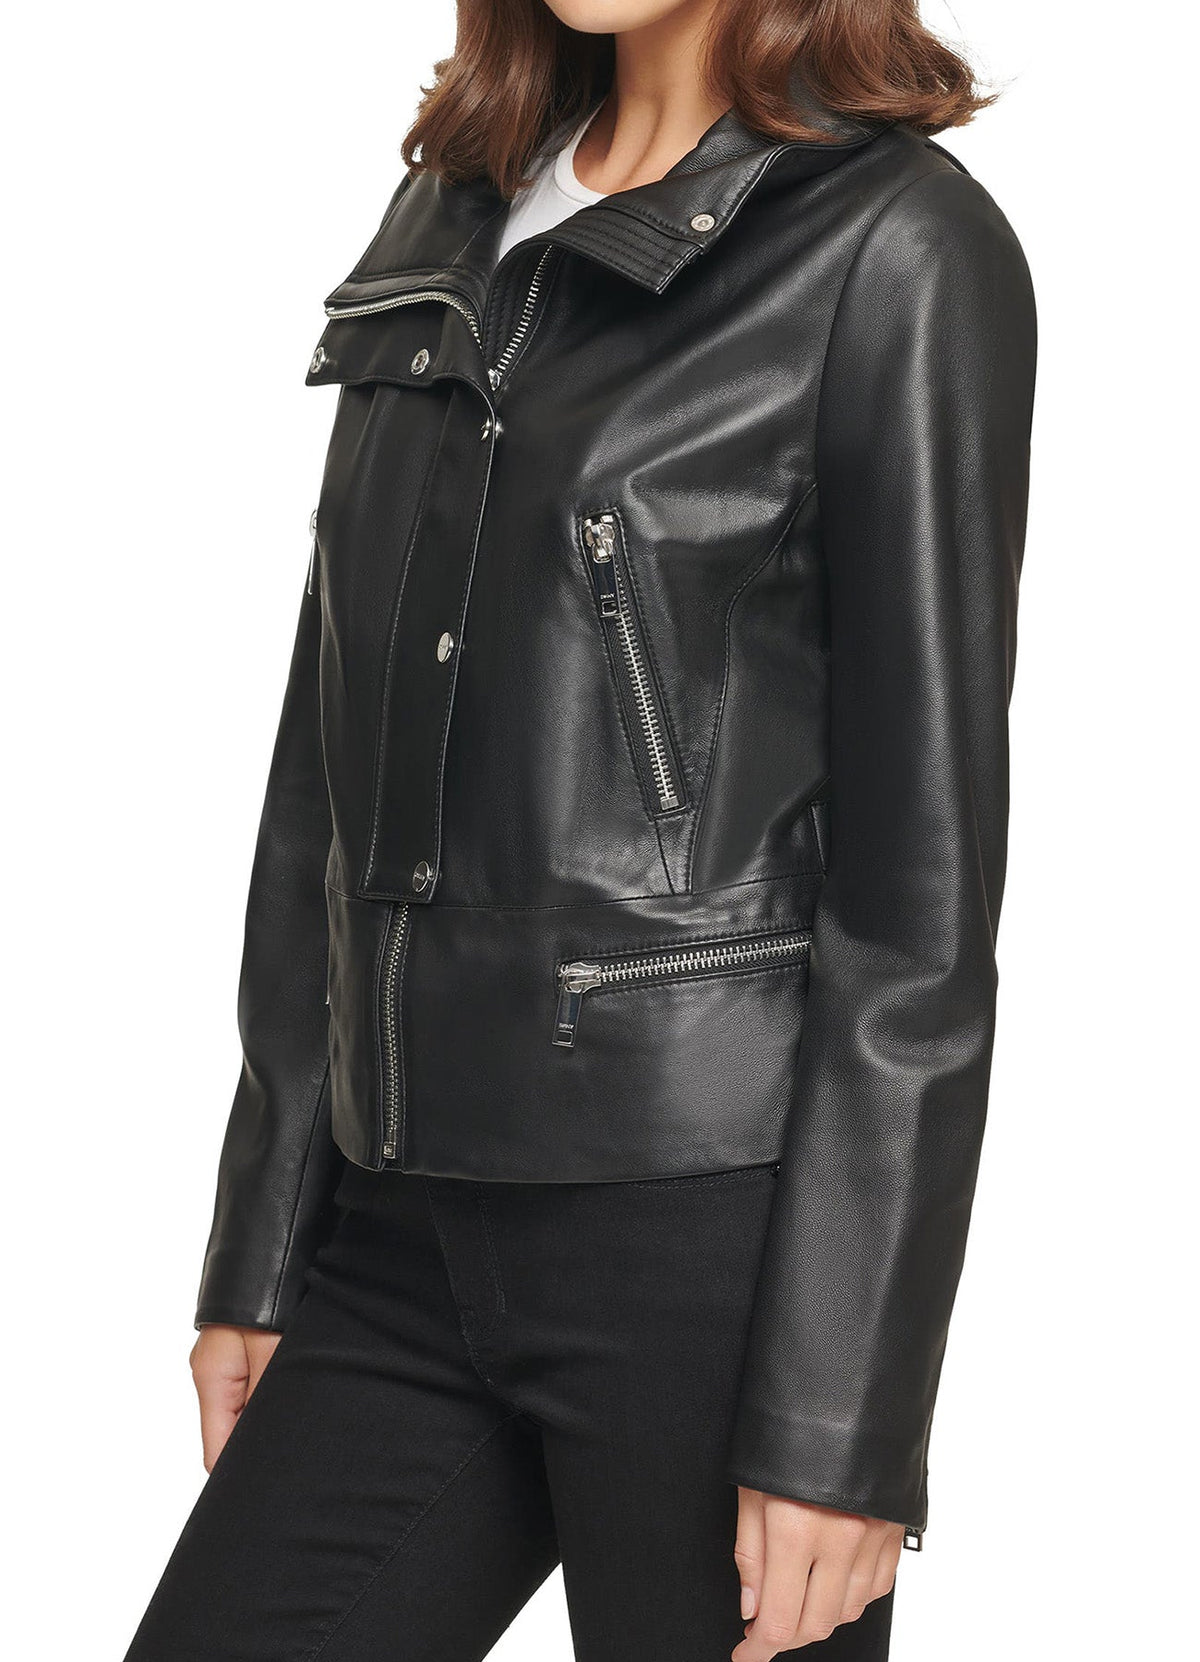 Womens Stylish Black Leather Jacket